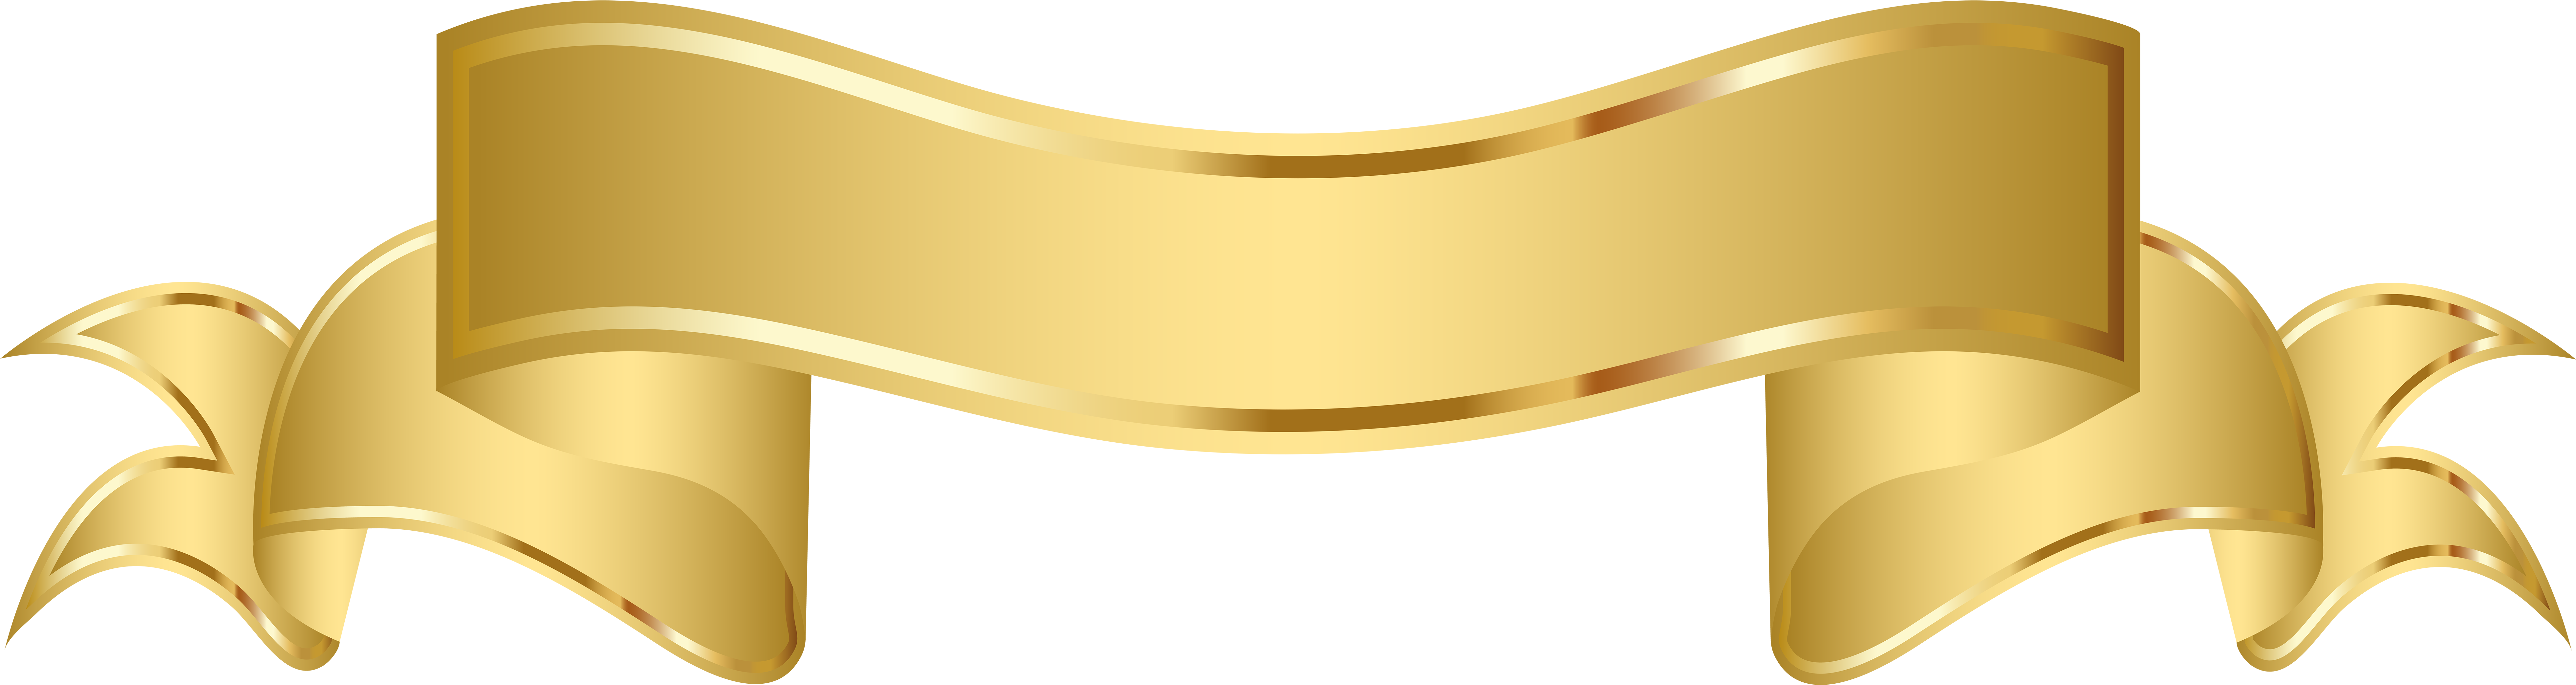 Elegant Gold Banner Graphic PNG image